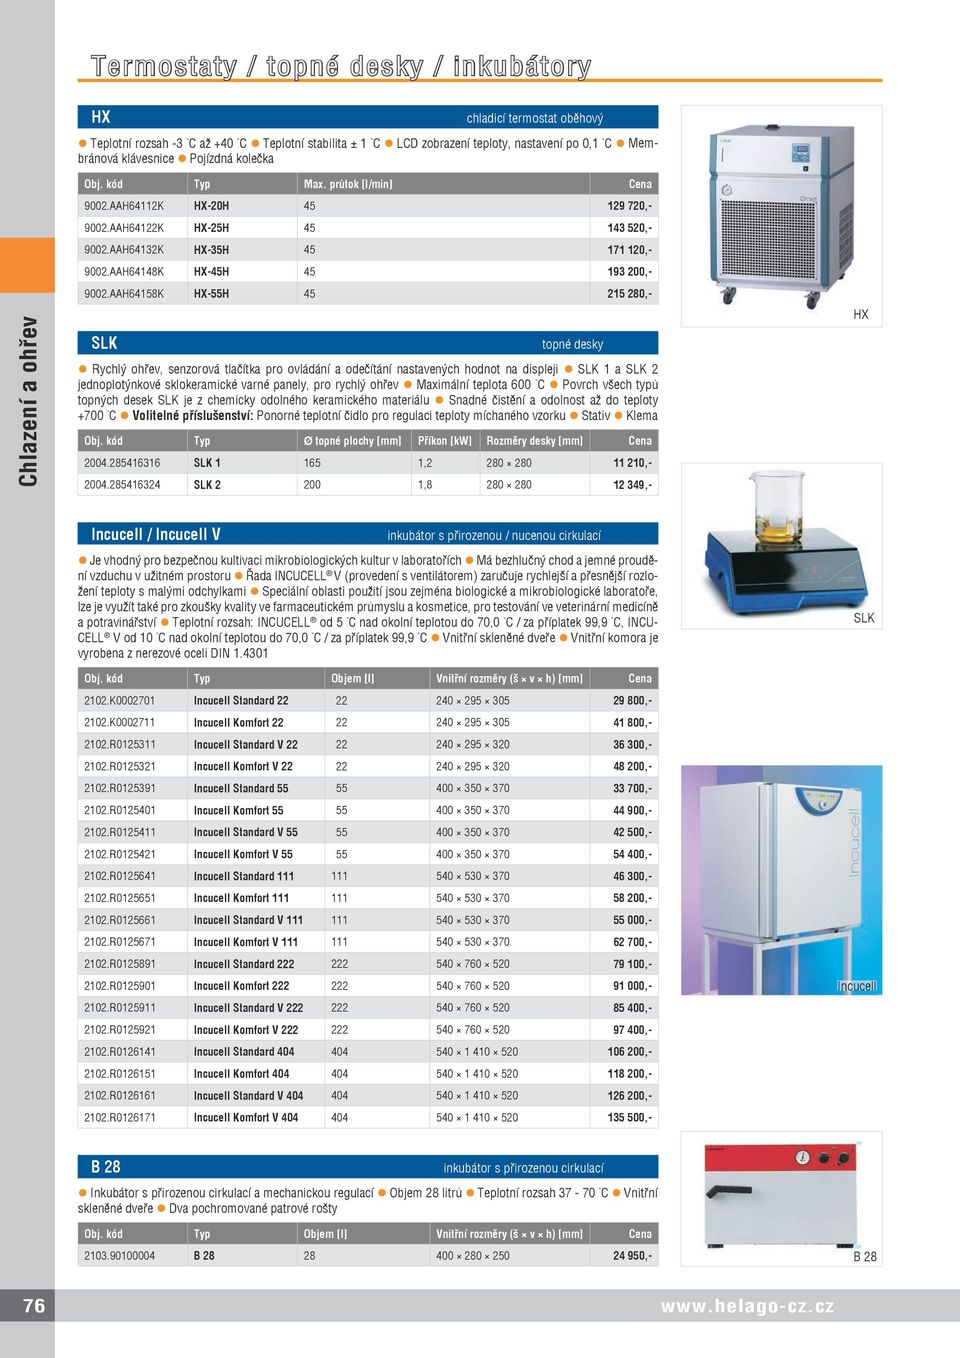 AAH64158K HX-55H 45 215 280,- SLK topné desky Rychlý ohřev, senzorová tlačítka pro ovládání a odečítání nastavených hodnot na displeji SLK 1 a SLK 2 jednoplotýnkové sklokeramické varné panely, pro